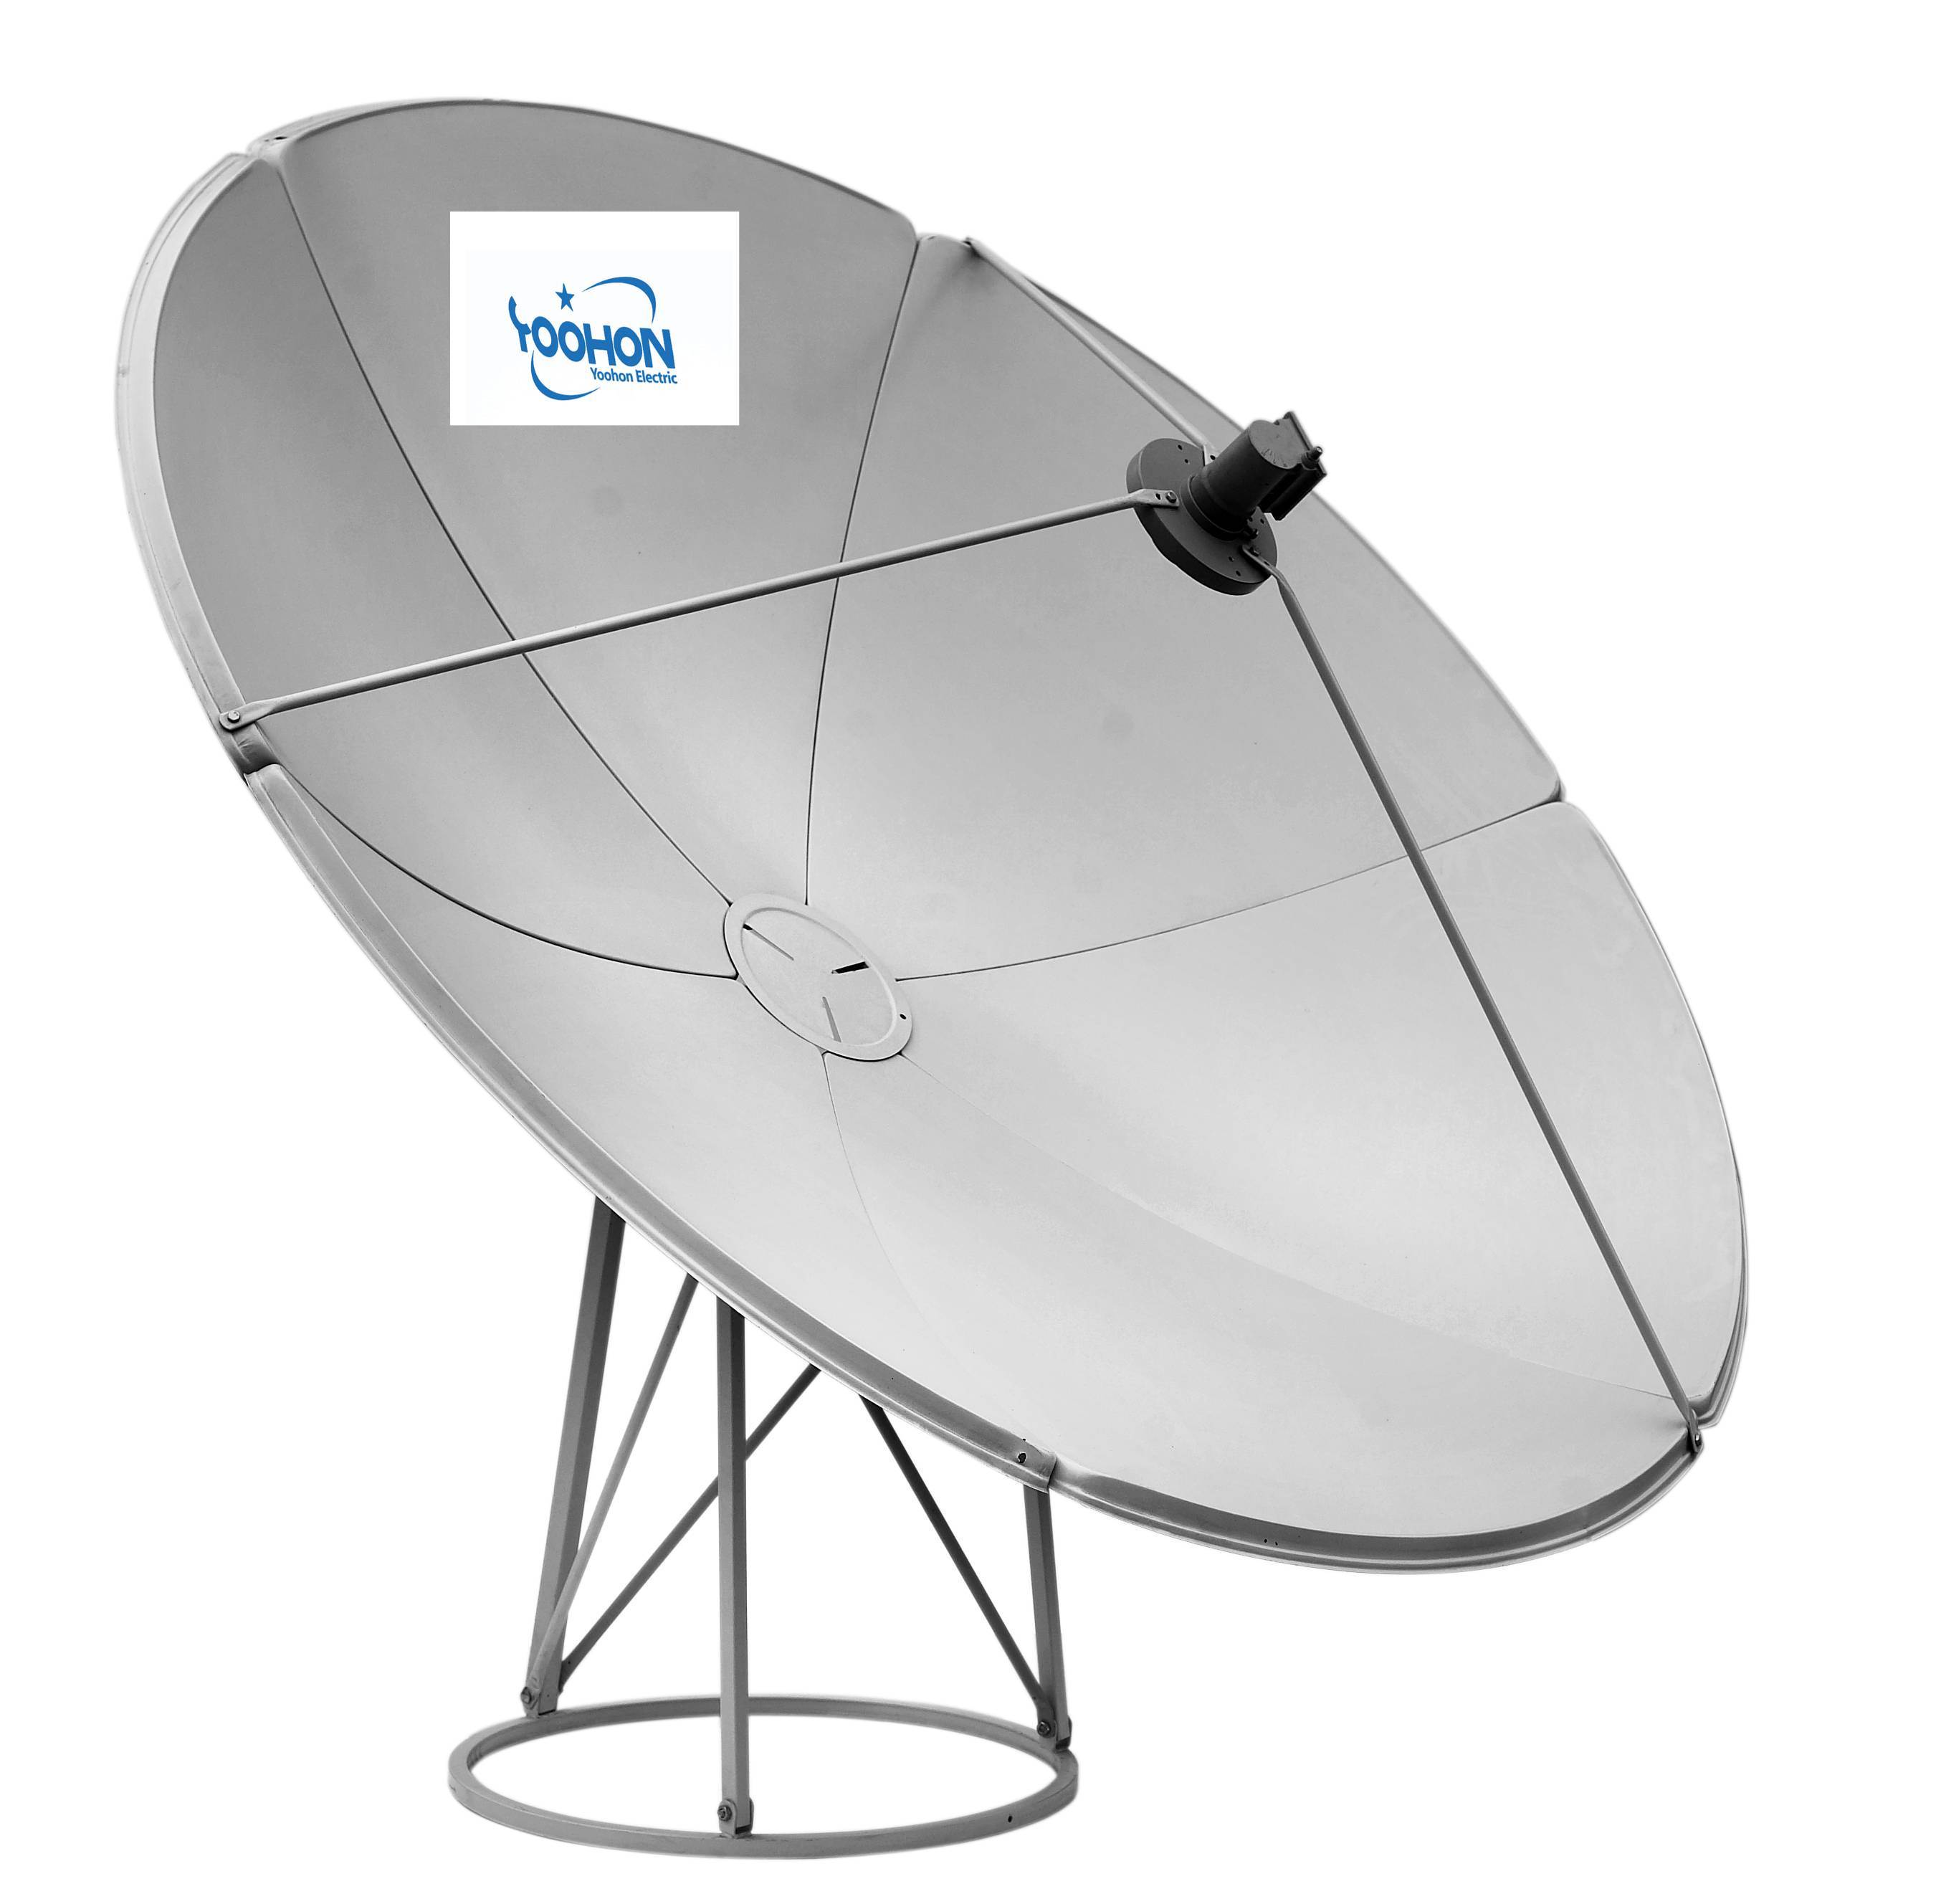 Satellite dish. Антенна спутниковая "Ямал" 1.5м. прямофокус. Прямофокусная параболическая антенна. Lans спутниковая антенна -97.